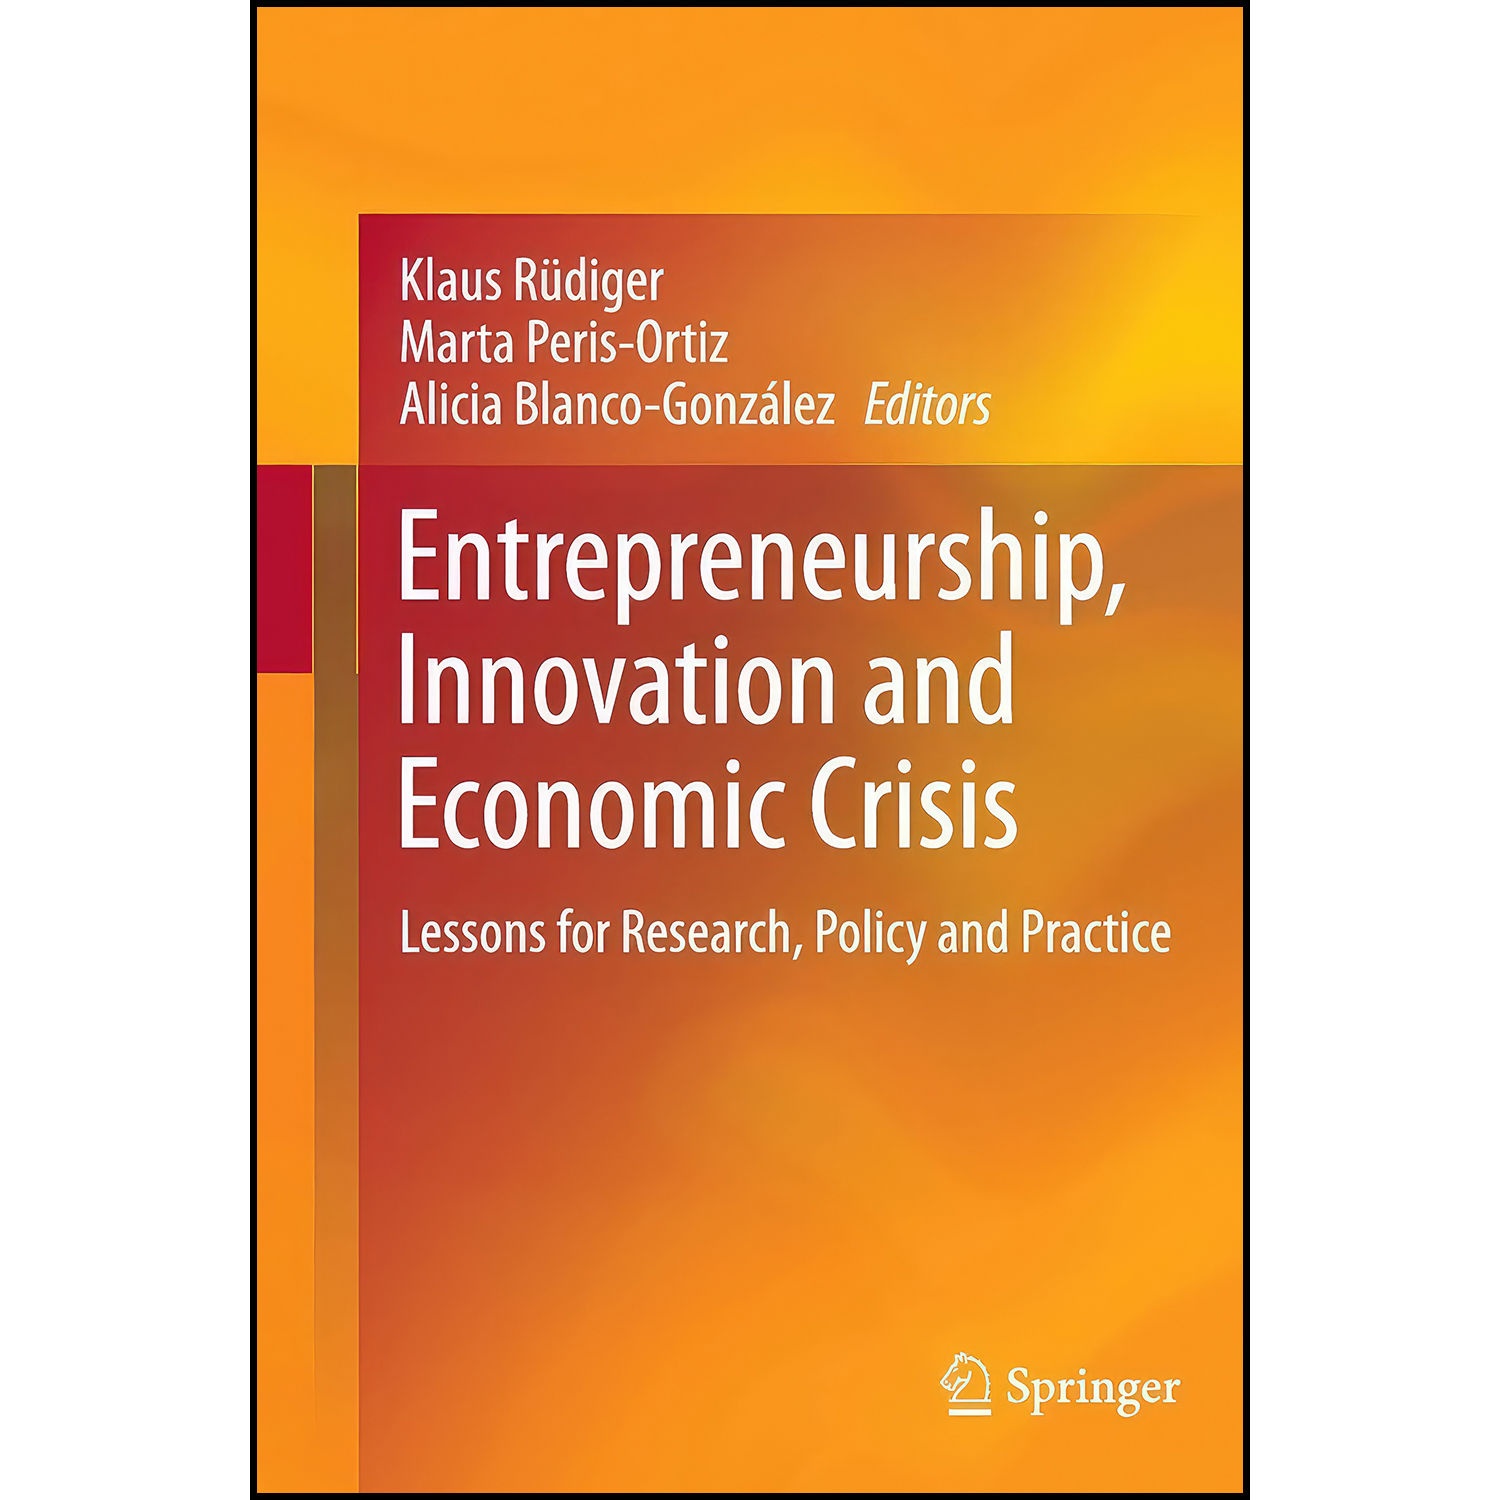 کتاب Entrepreneurship, Innovation and Economic Crisis اثر جمعي از نويسندگان انتشارات بله